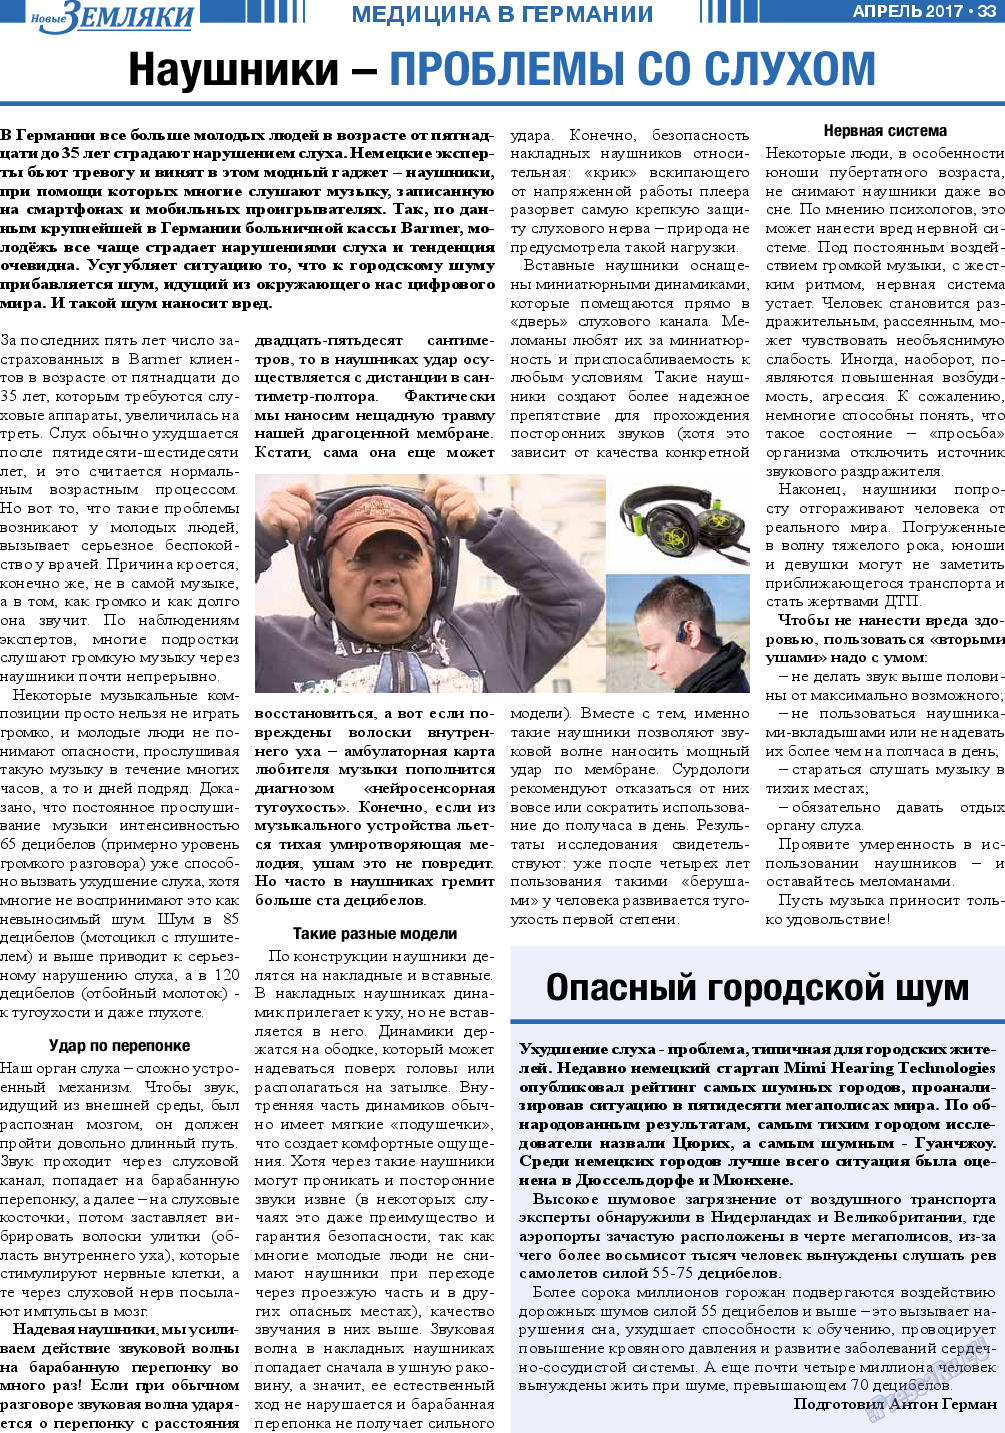 Новые Земляки, газета. 2017 №4 стр.33